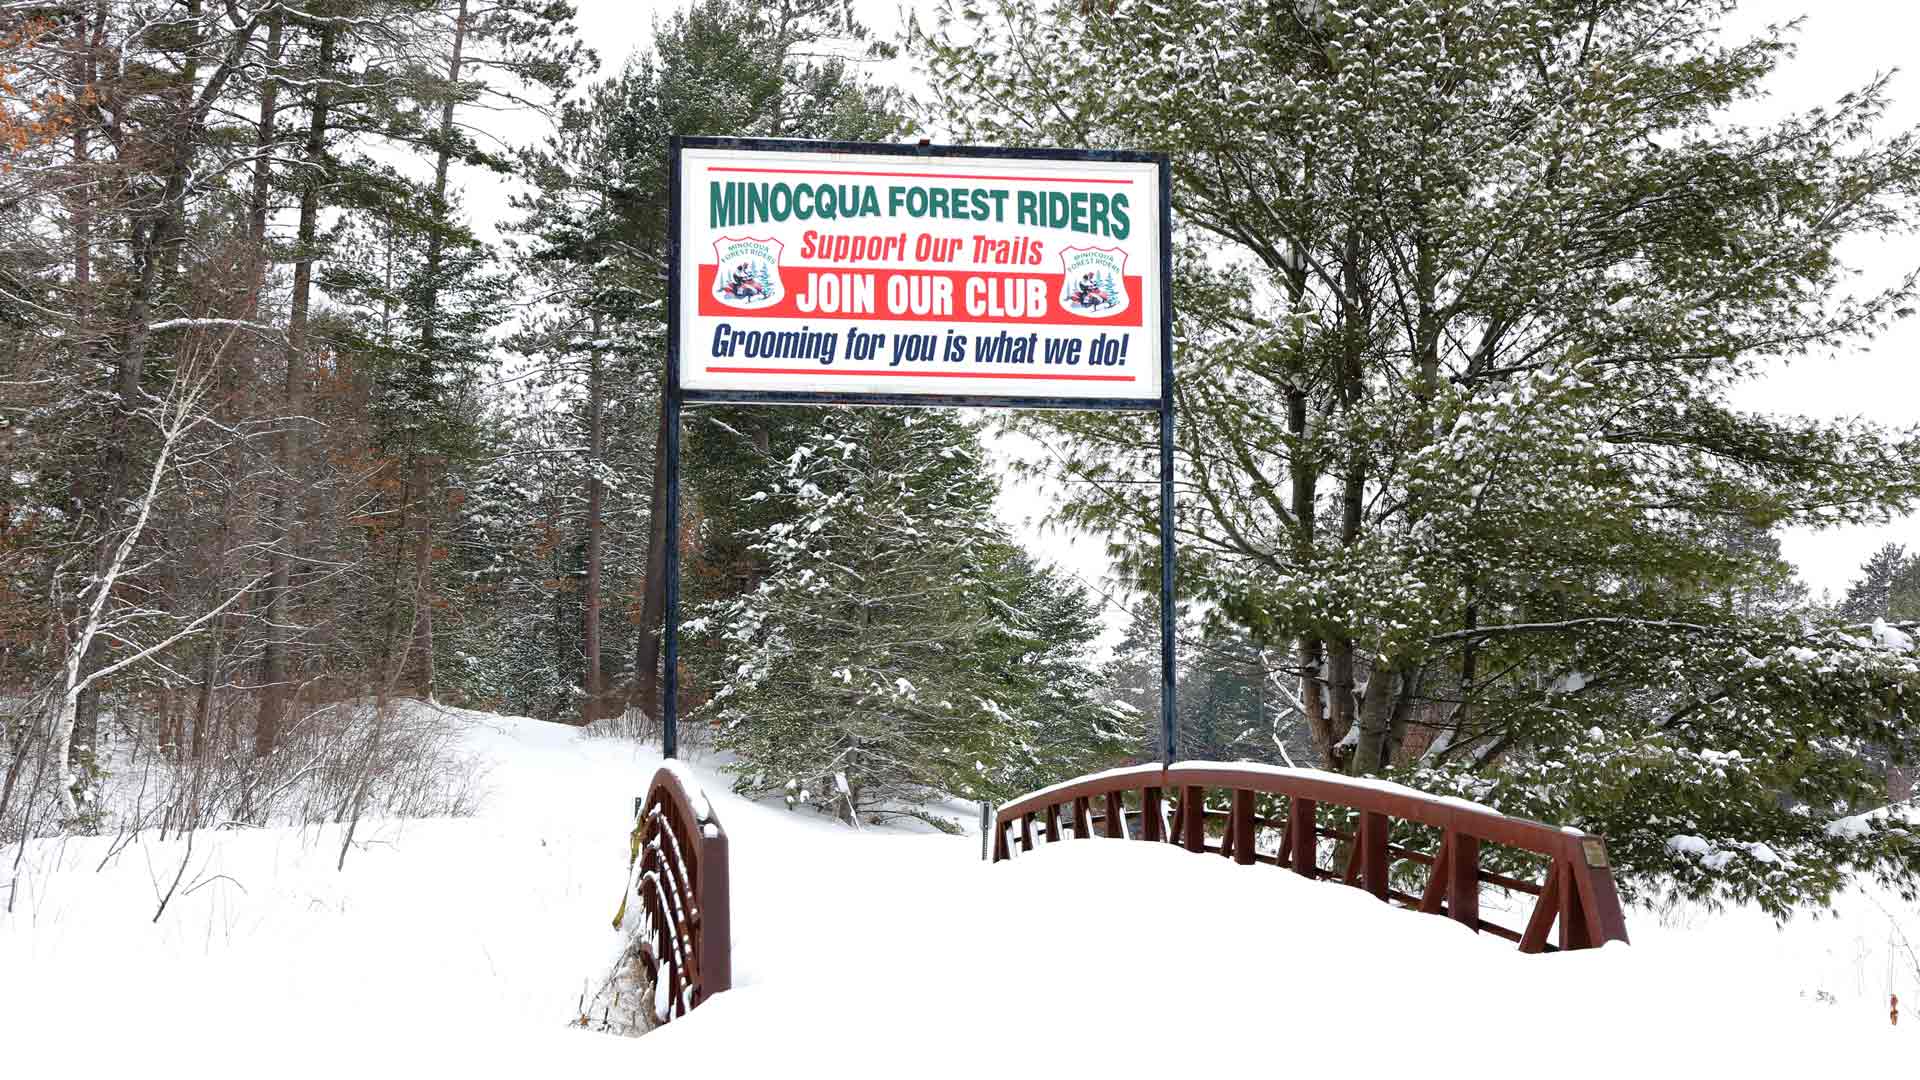 Minocqua Forest Riders Snowmobile Club trail